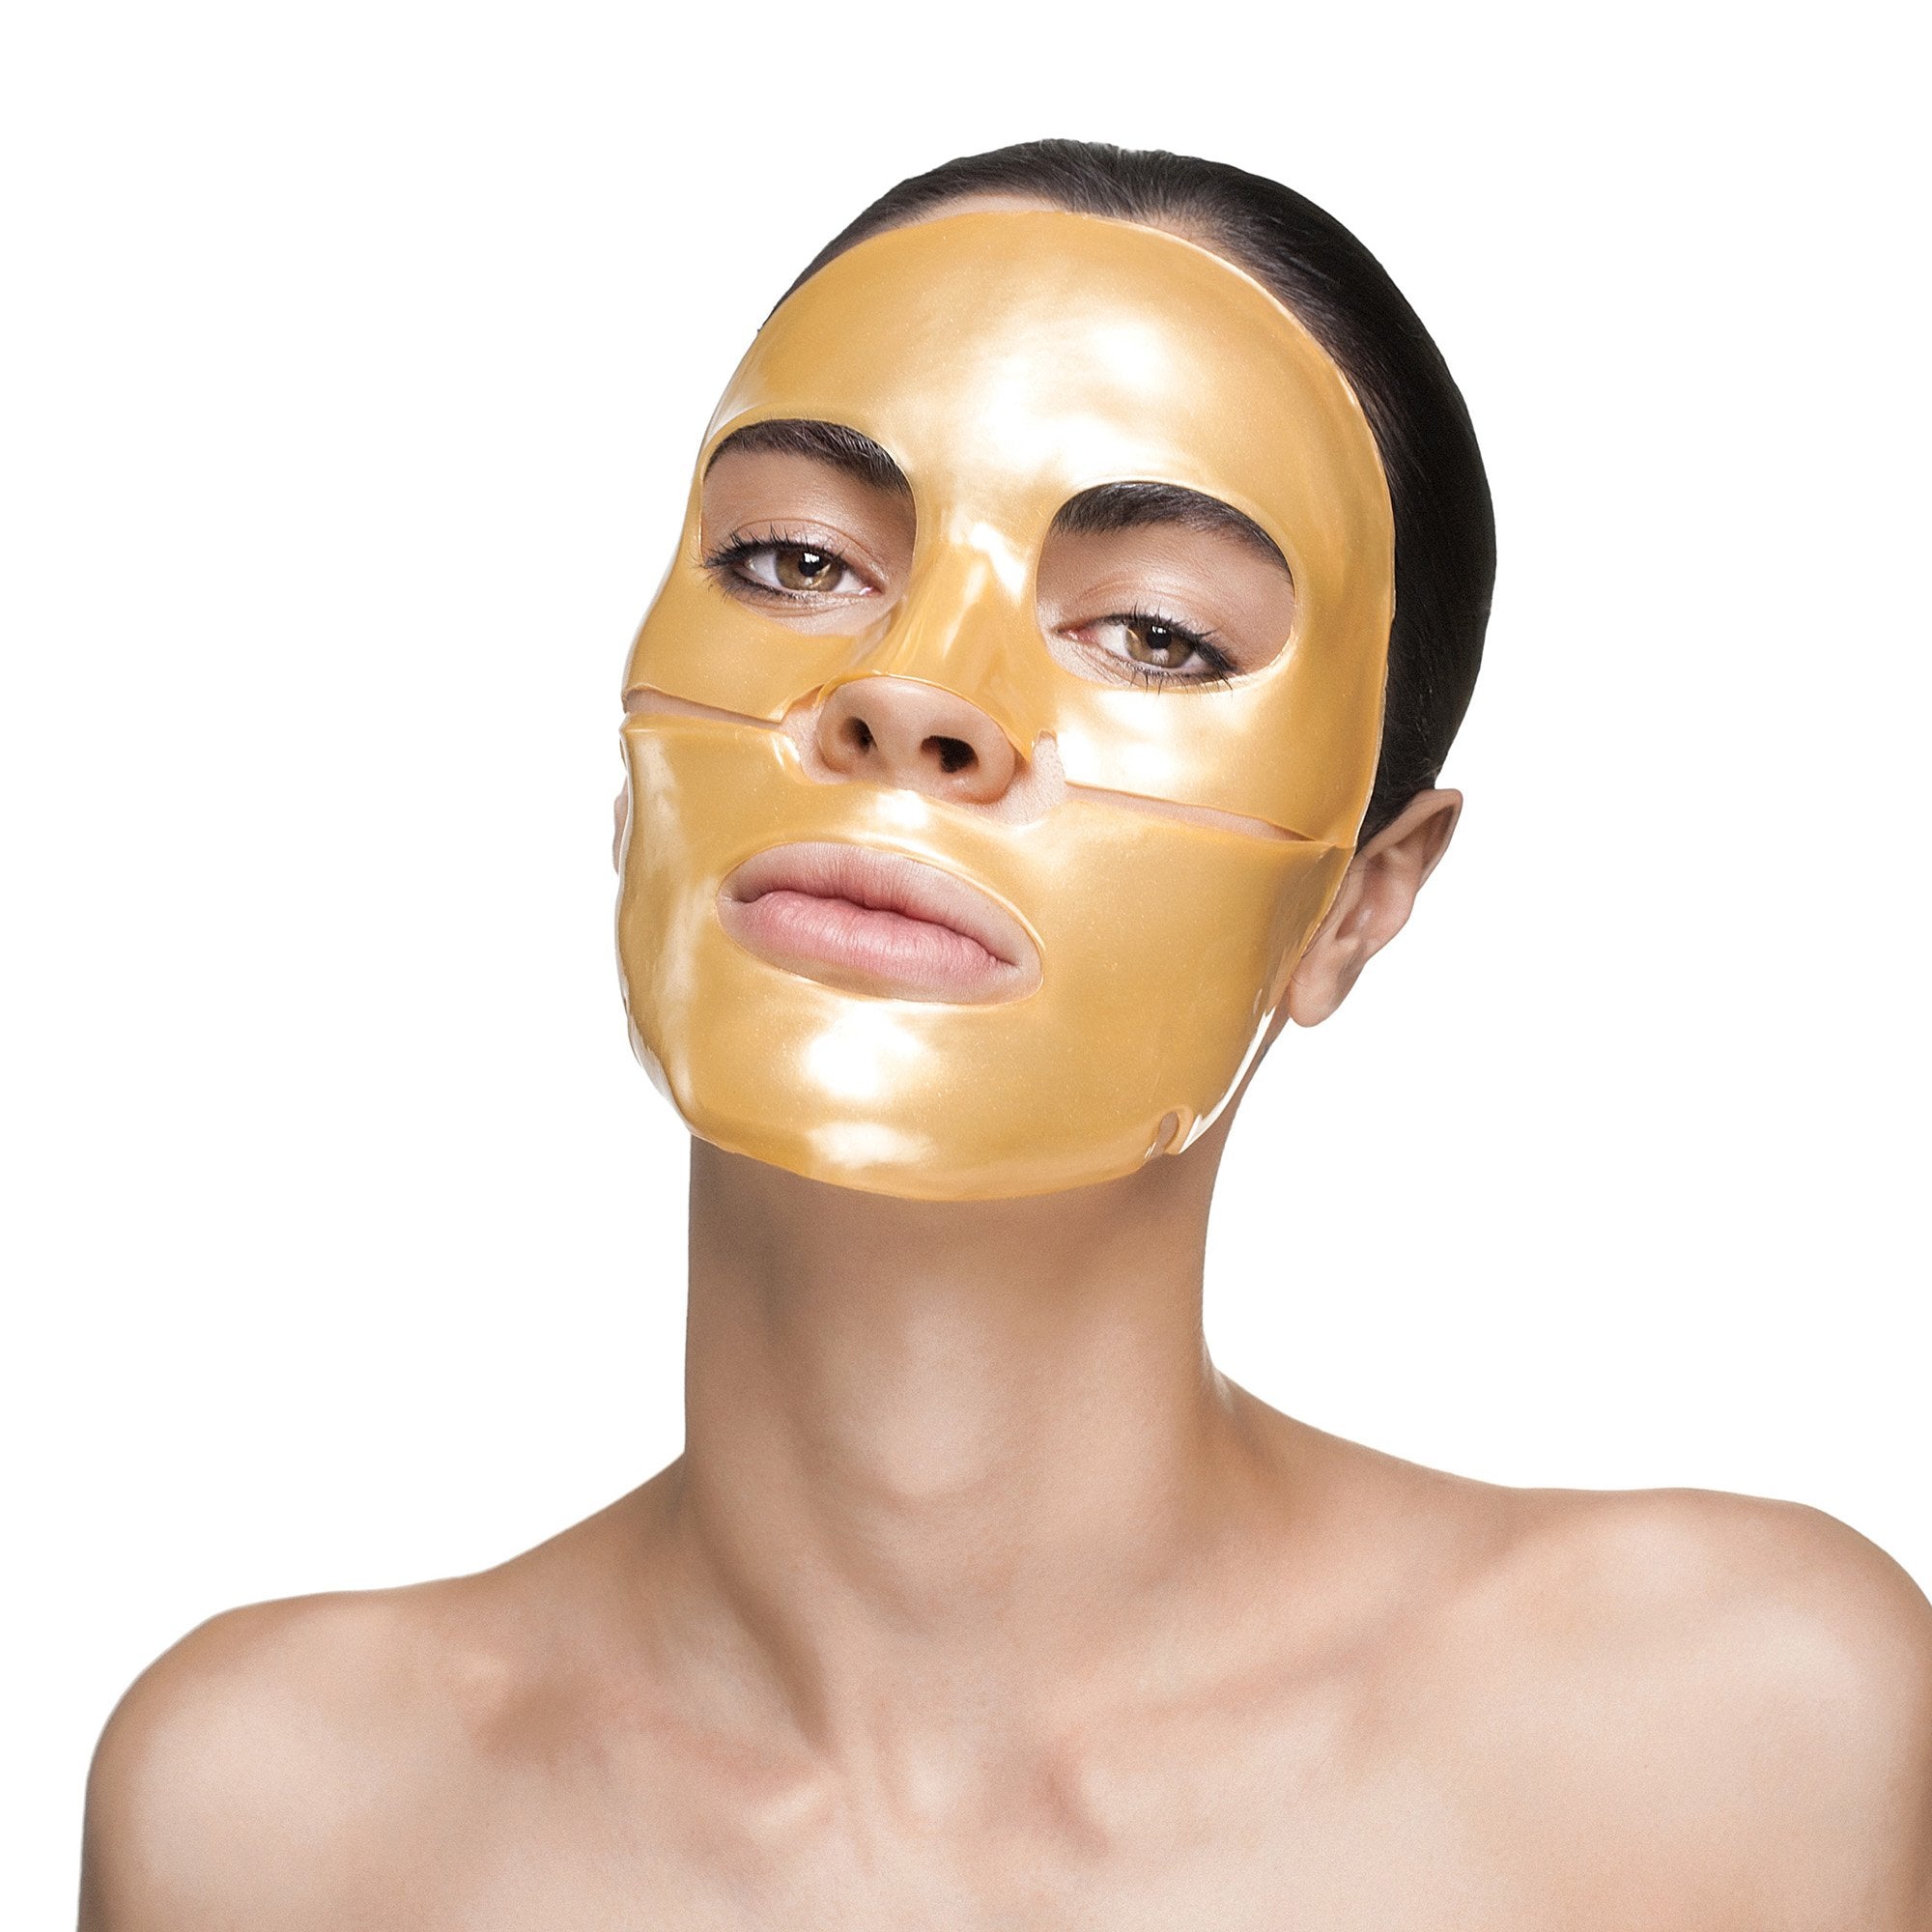 Nanogold Repair Face Mask - 4 Pack | Knesko